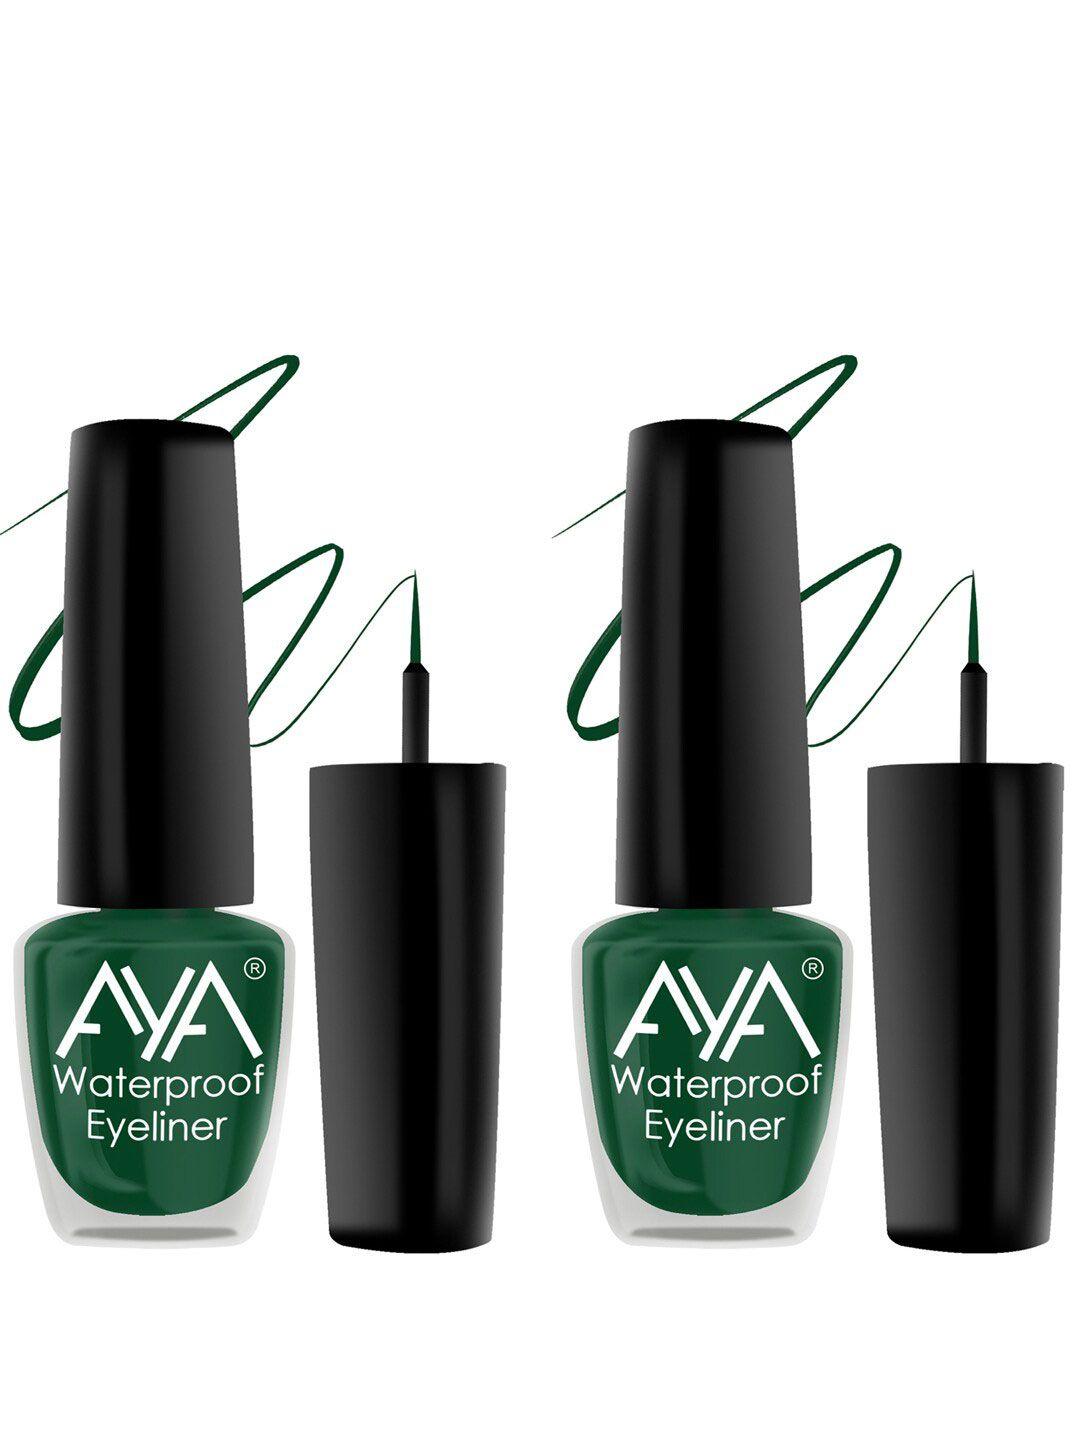 aya set of 2 long lasting 24 hrs & waterproof liquid eyeliner 5ml each - green